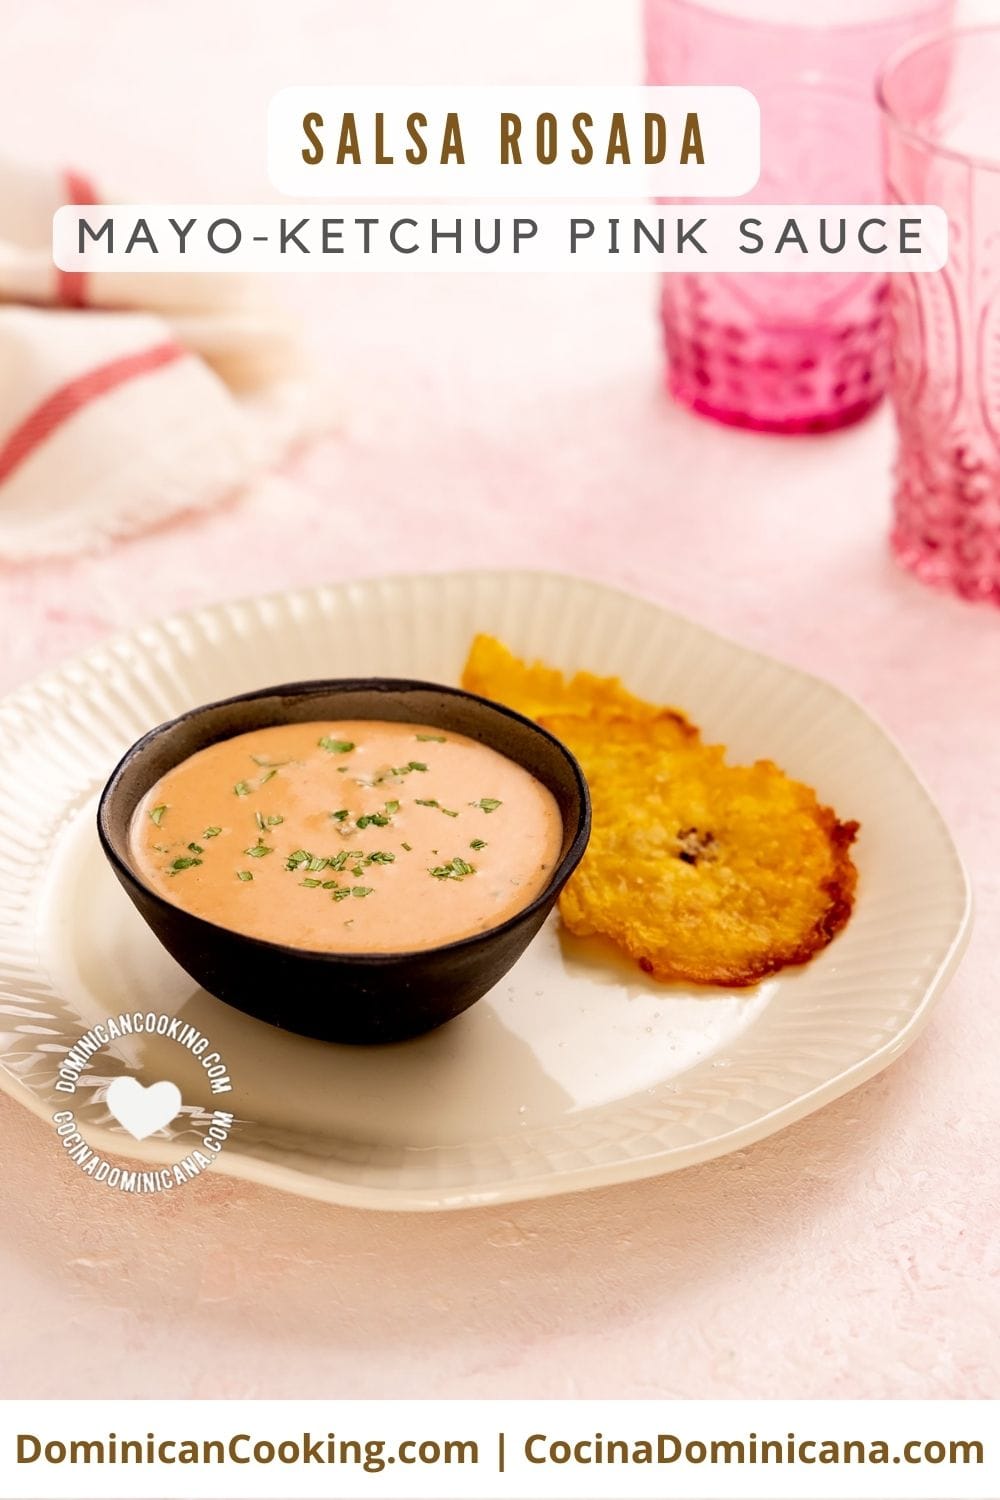 Salsa rosada (mayo-ketchup pink sauce) recipe.